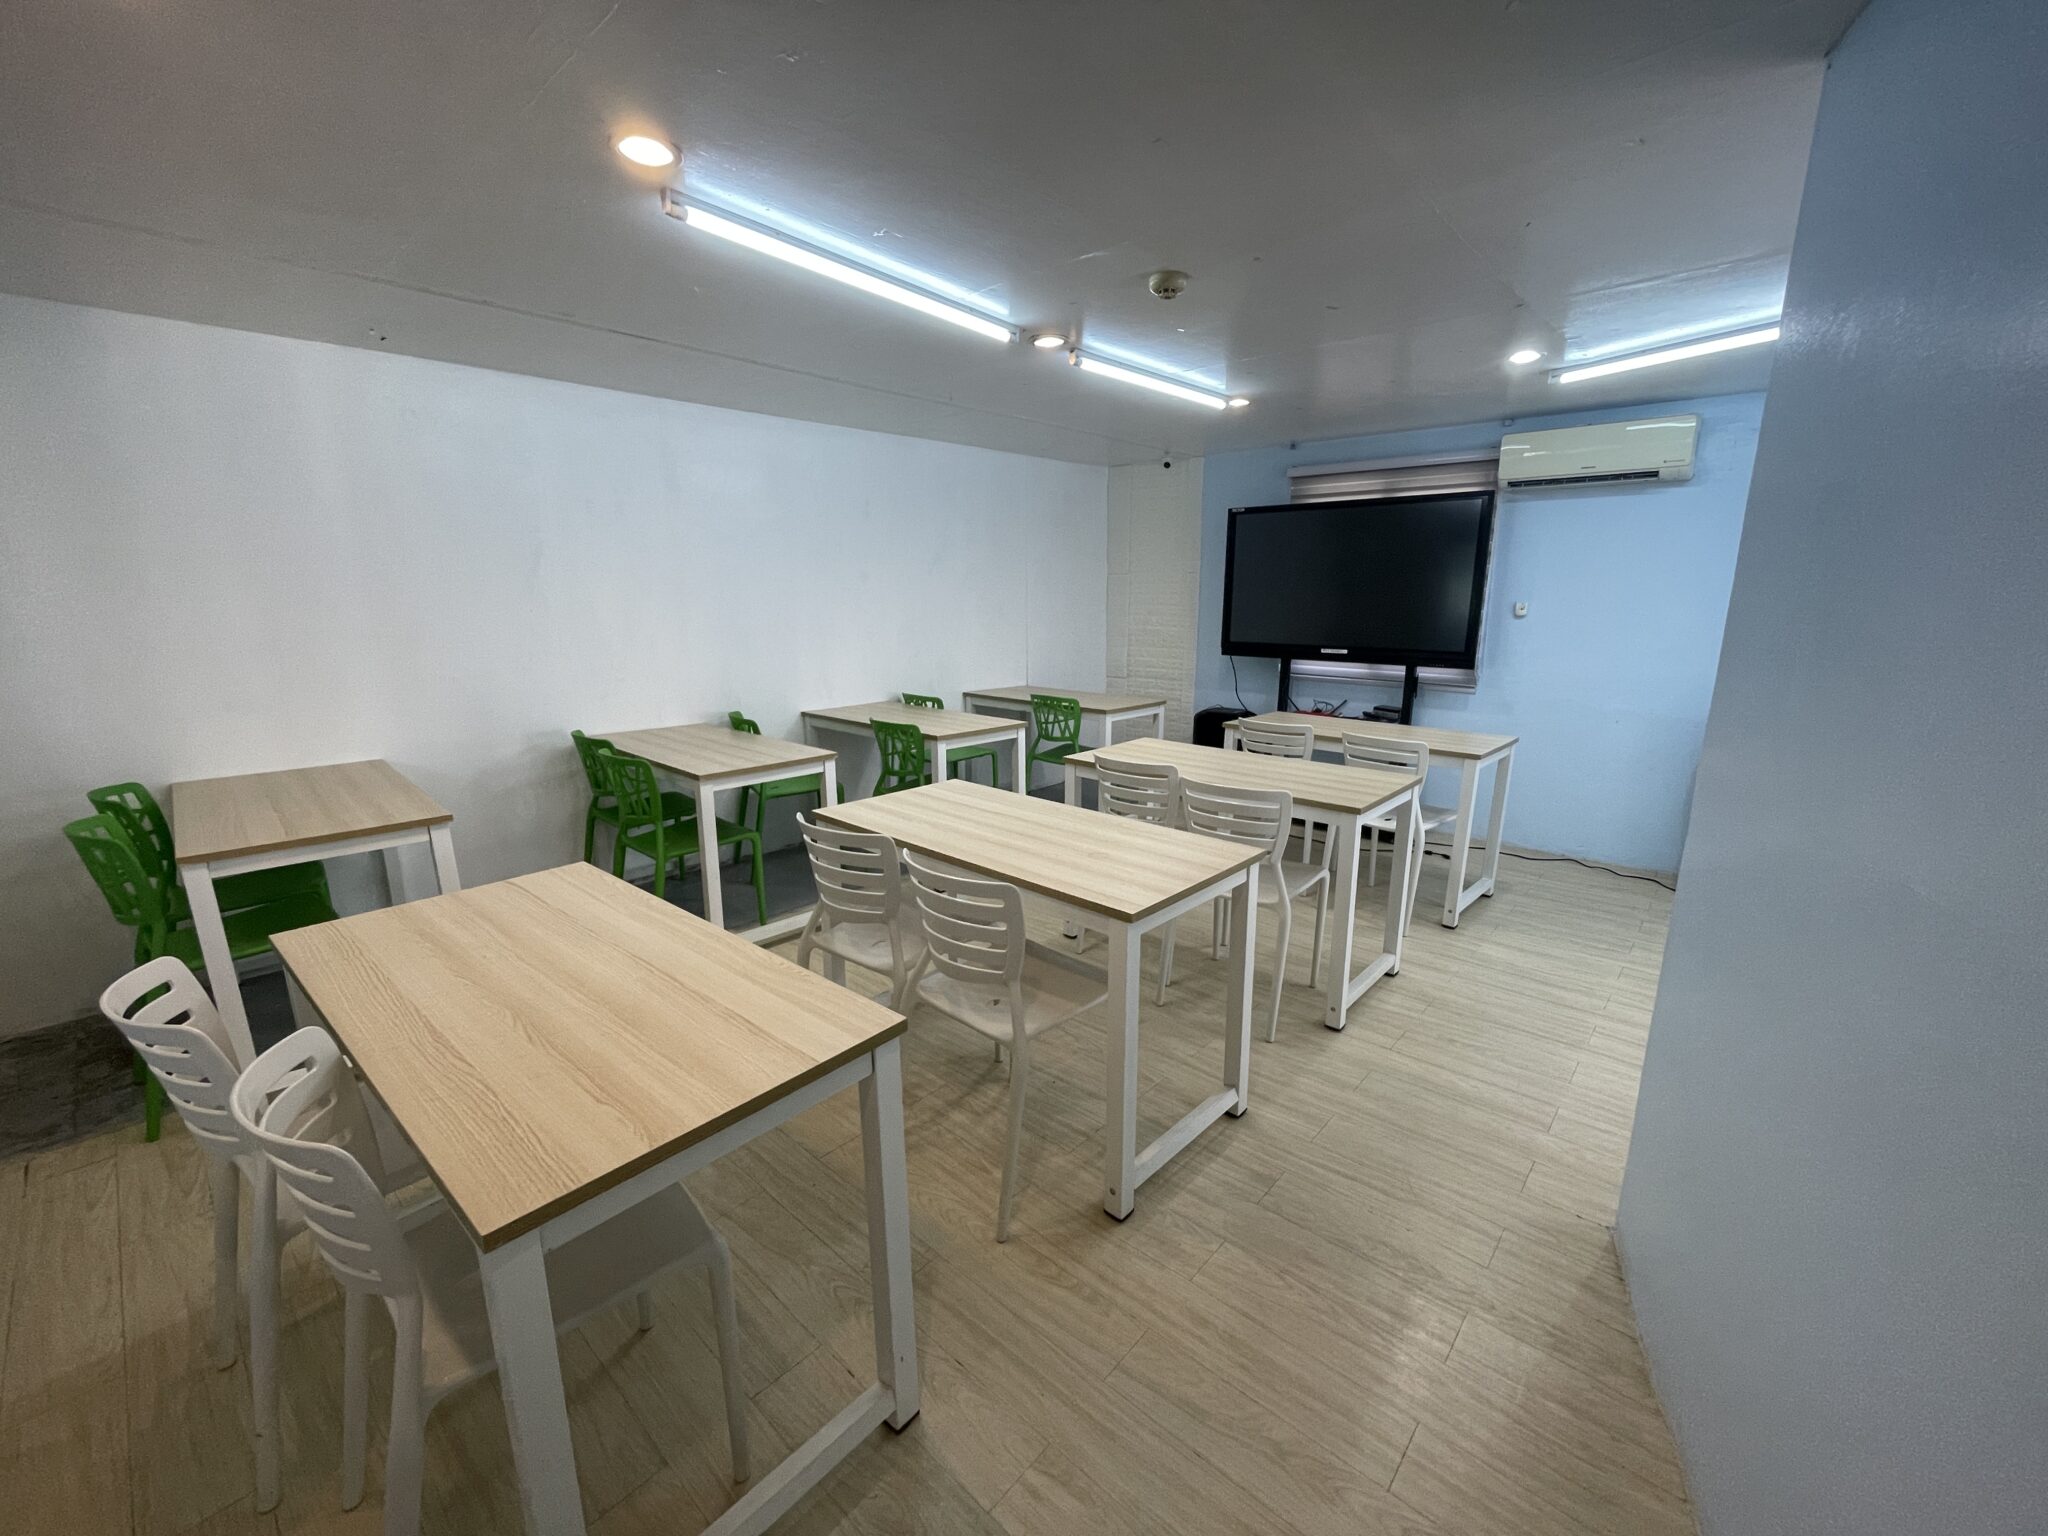 winning語言學校團體教室